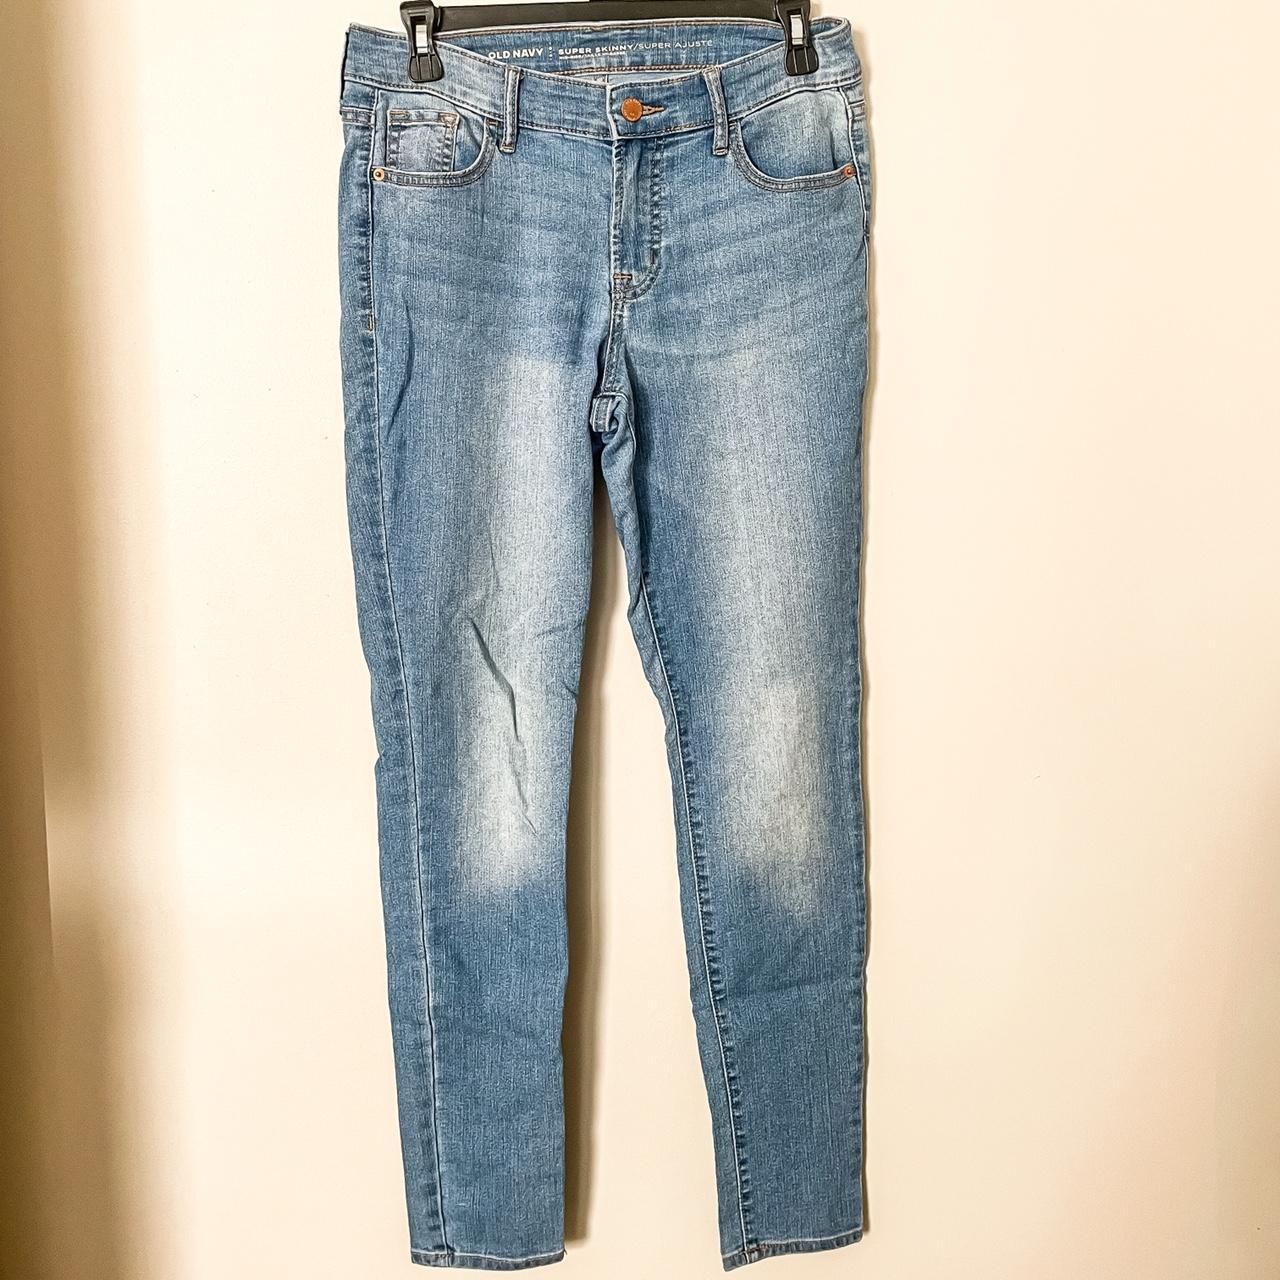 Old Navy Medium Wash Super Skinny Jeans -brand: Old... - Depop